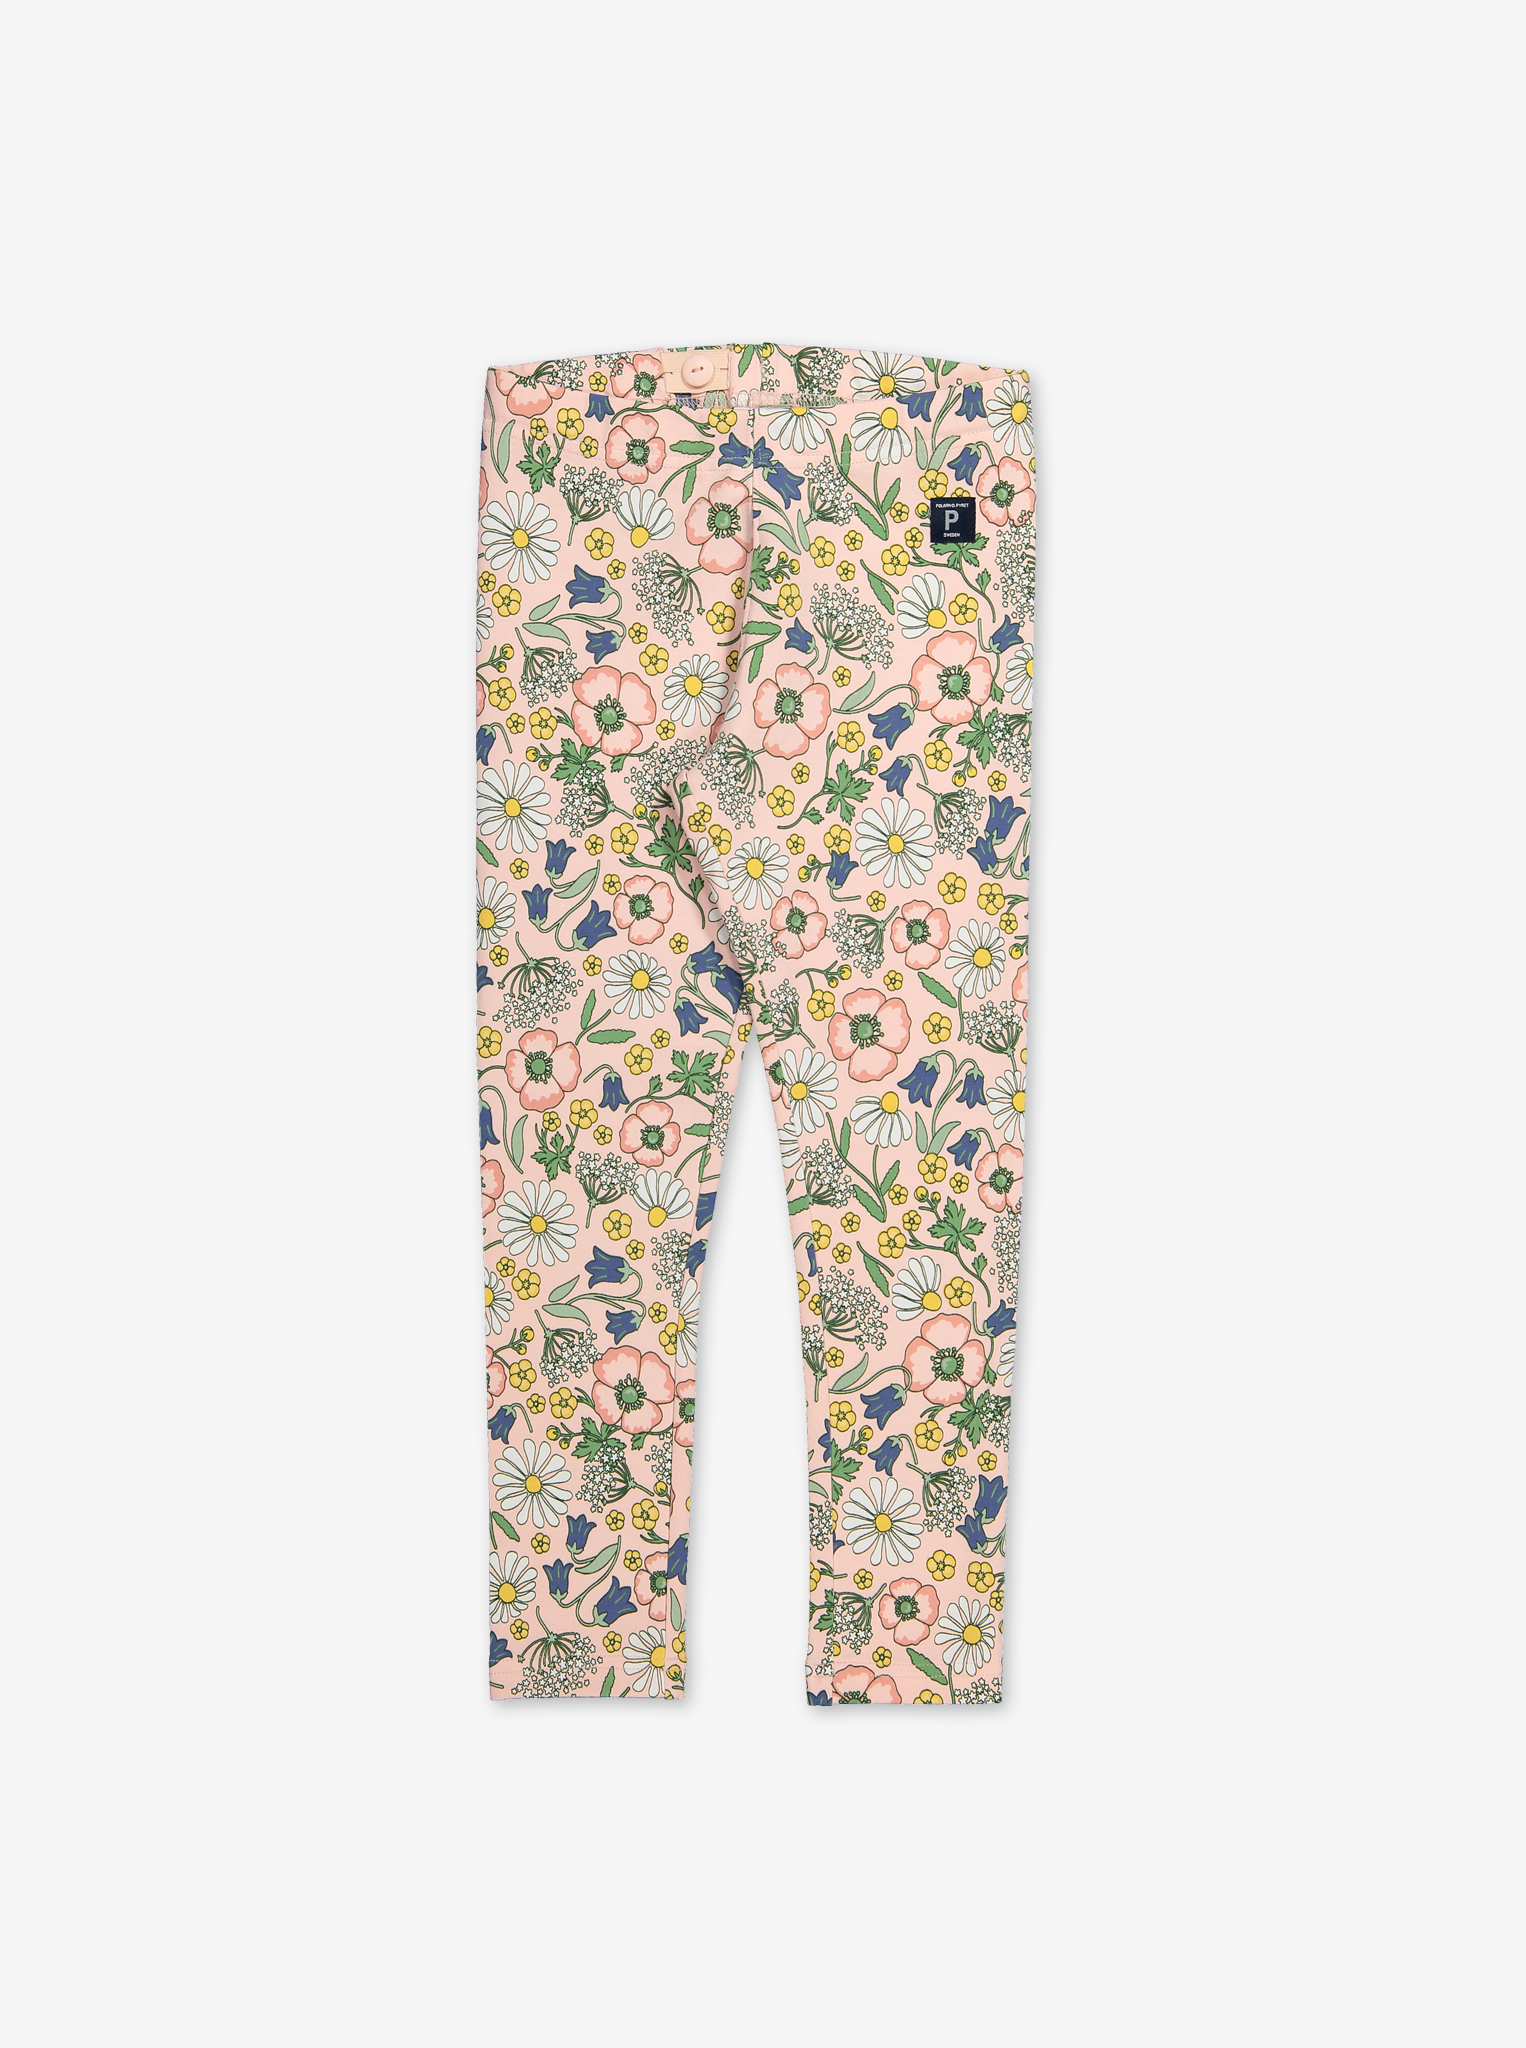 Scandi Floral Leggings-Girl-1-6y-Pink